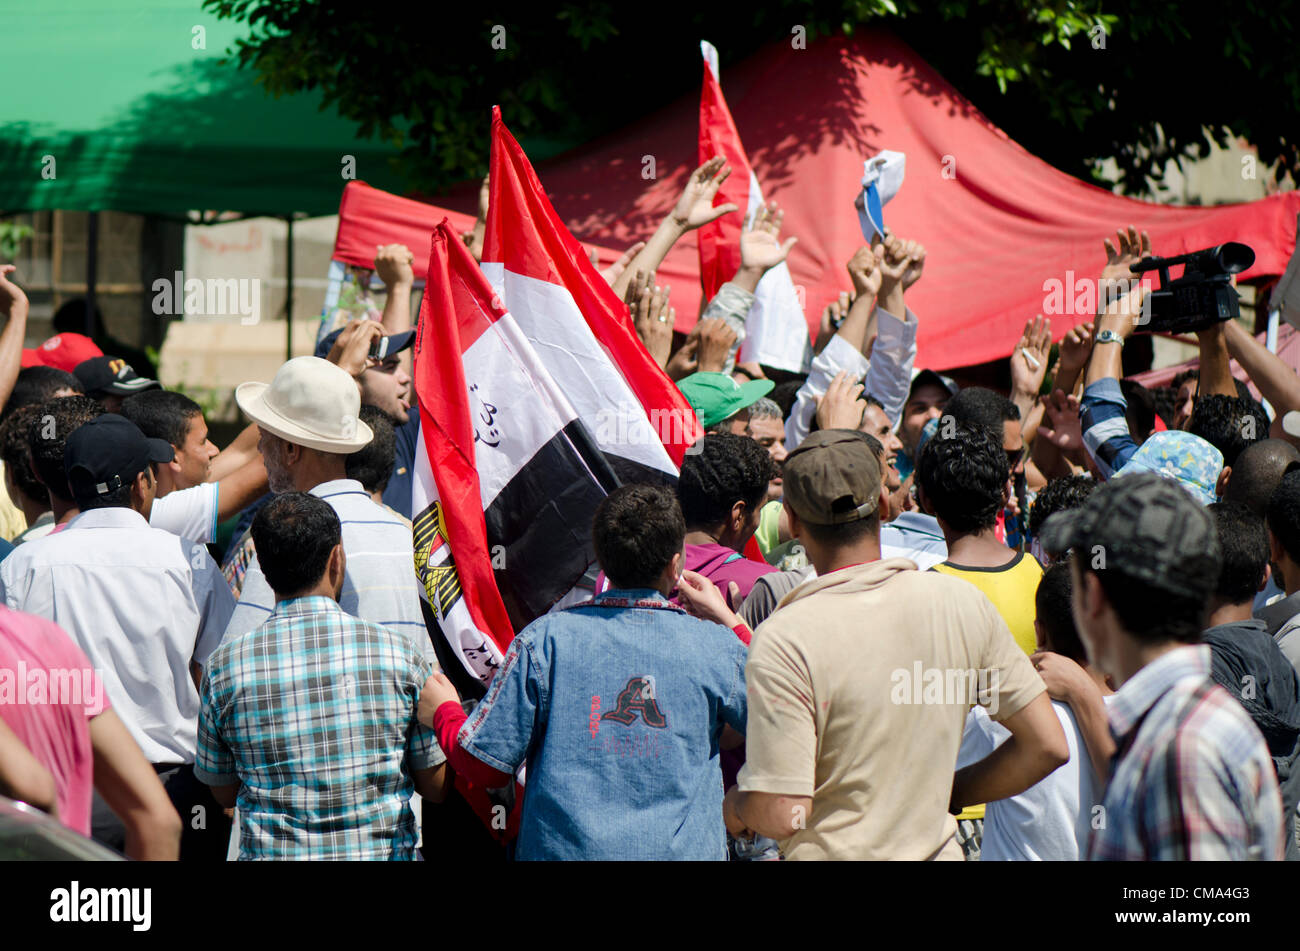 Les partisans de la candidate présidentielle Mohammed Morsi célébrer les résultats de l'élection au Caire, la place Tahrir en Égypte le dimanche 01 juillet 2012. Banque D'Images